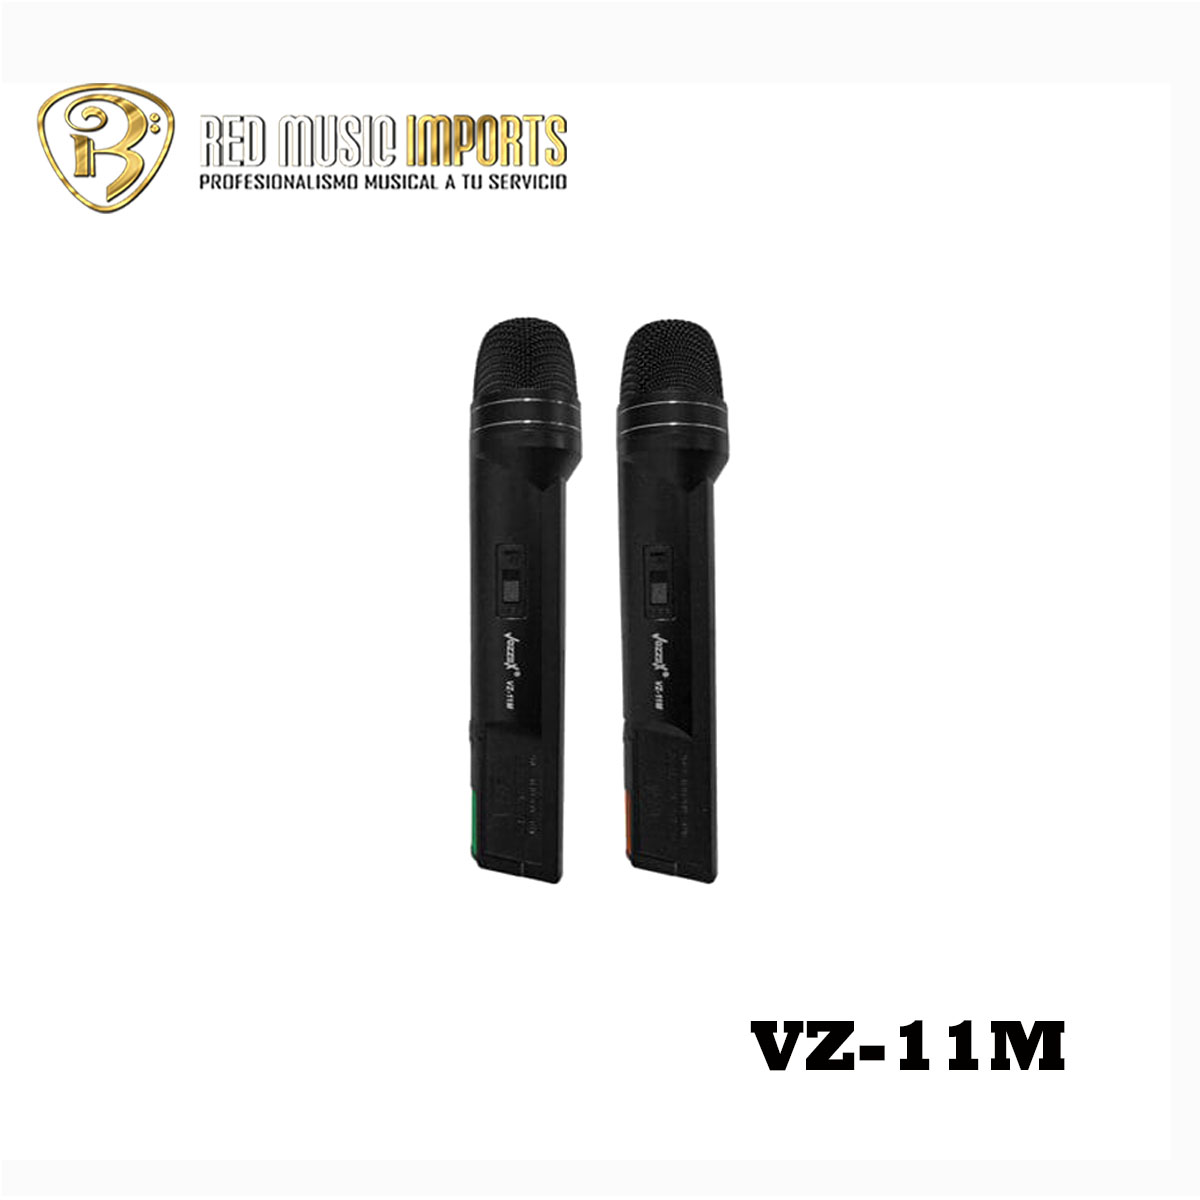 Microfono Profesional Doble Manual Inalambrico, Dual UHF 500-960 FM PLL,  VZ-9006-M Vozzex